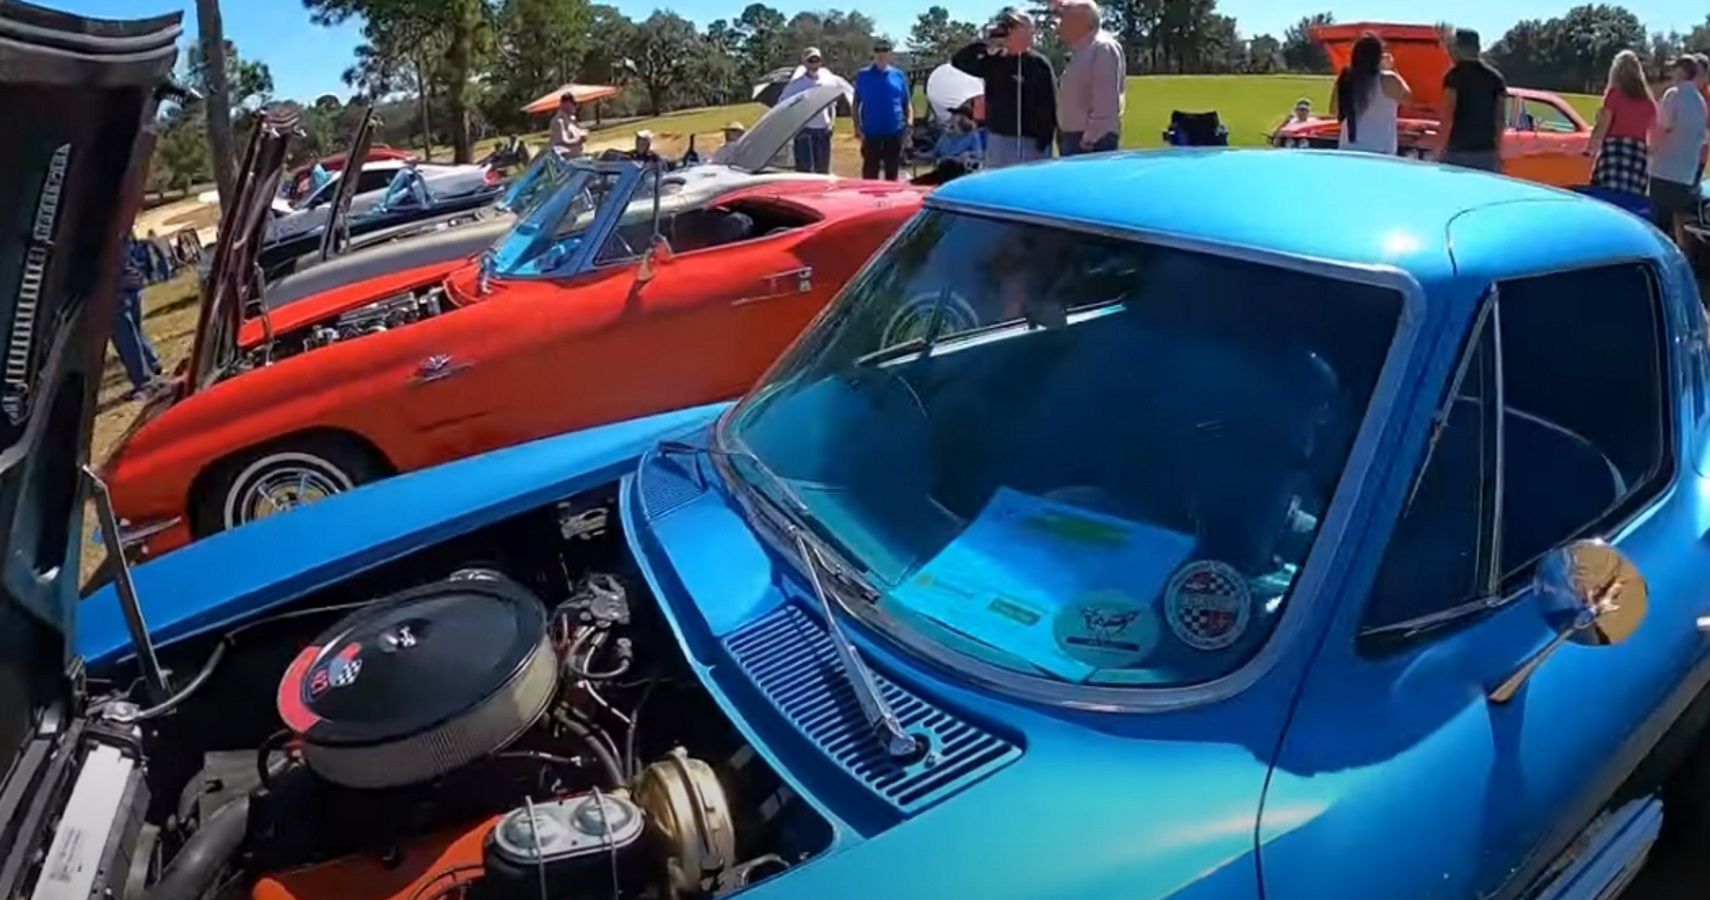 C1 and C2 Chevrolet Corvettes at a Florida car show